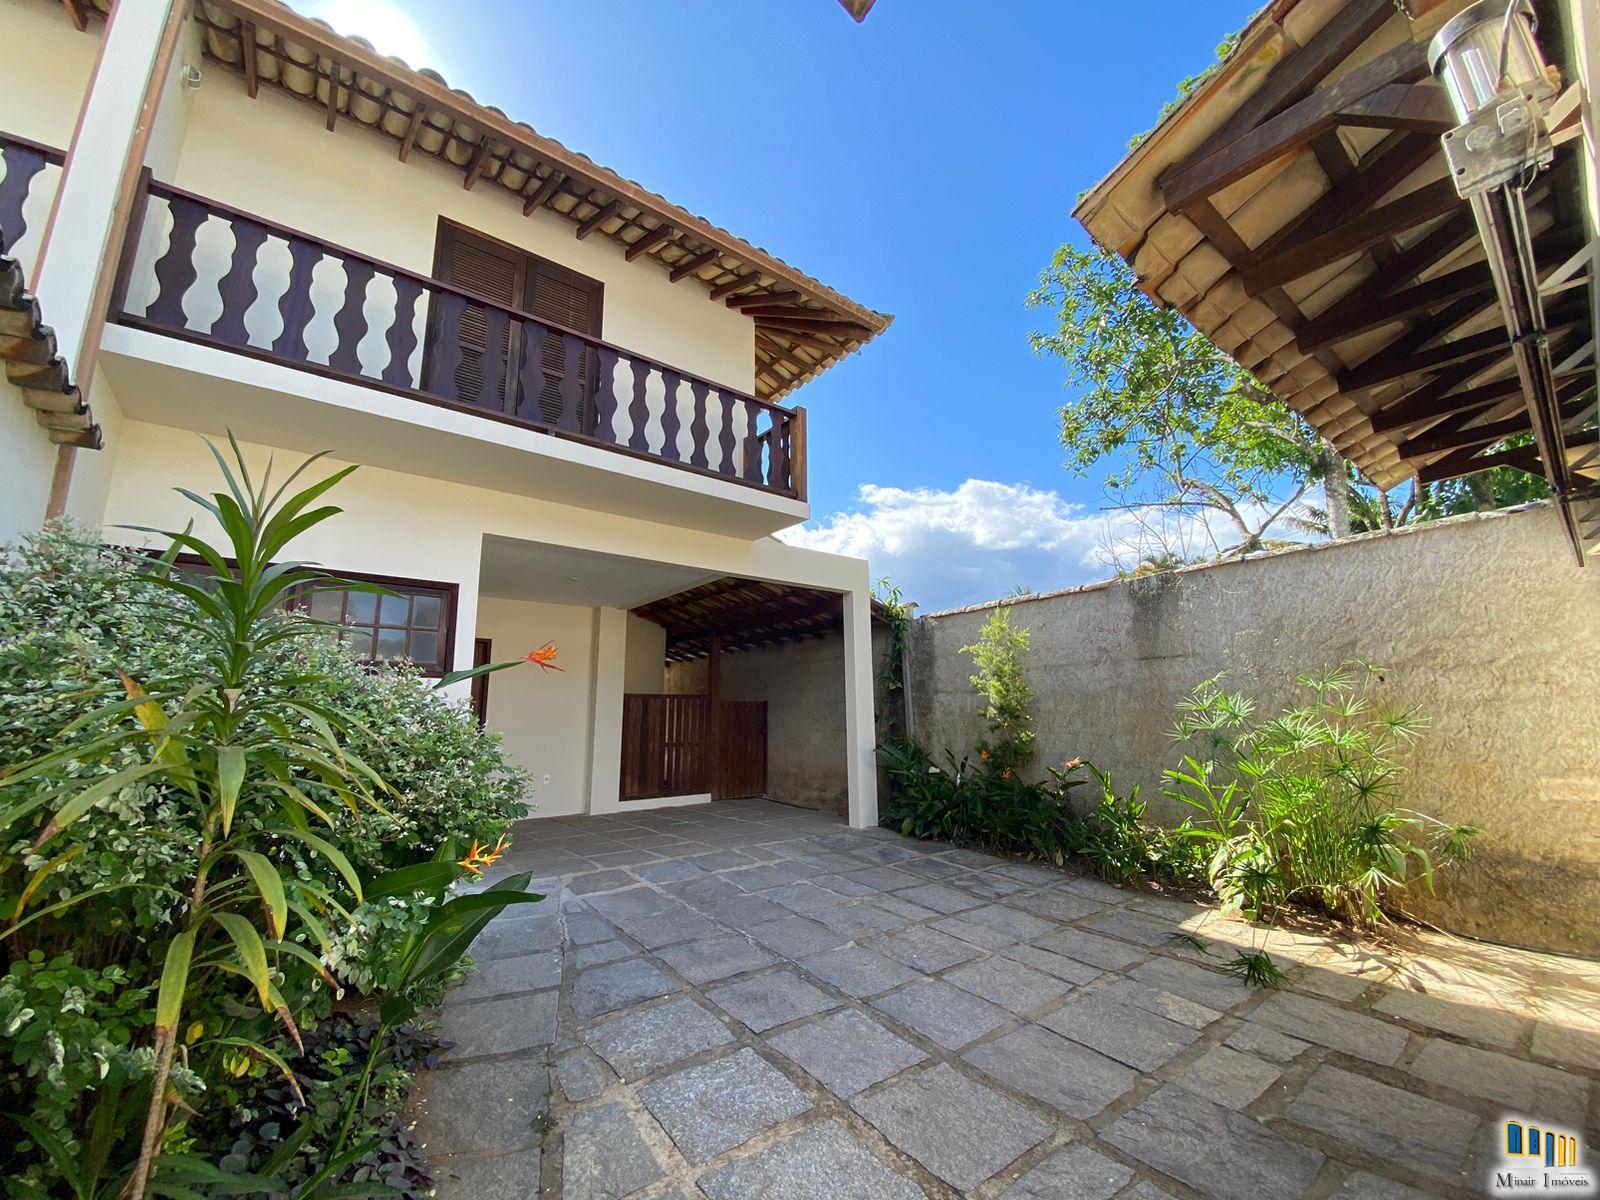 PCH 198 – Casa a venda no bairro Caborê com excelente localização